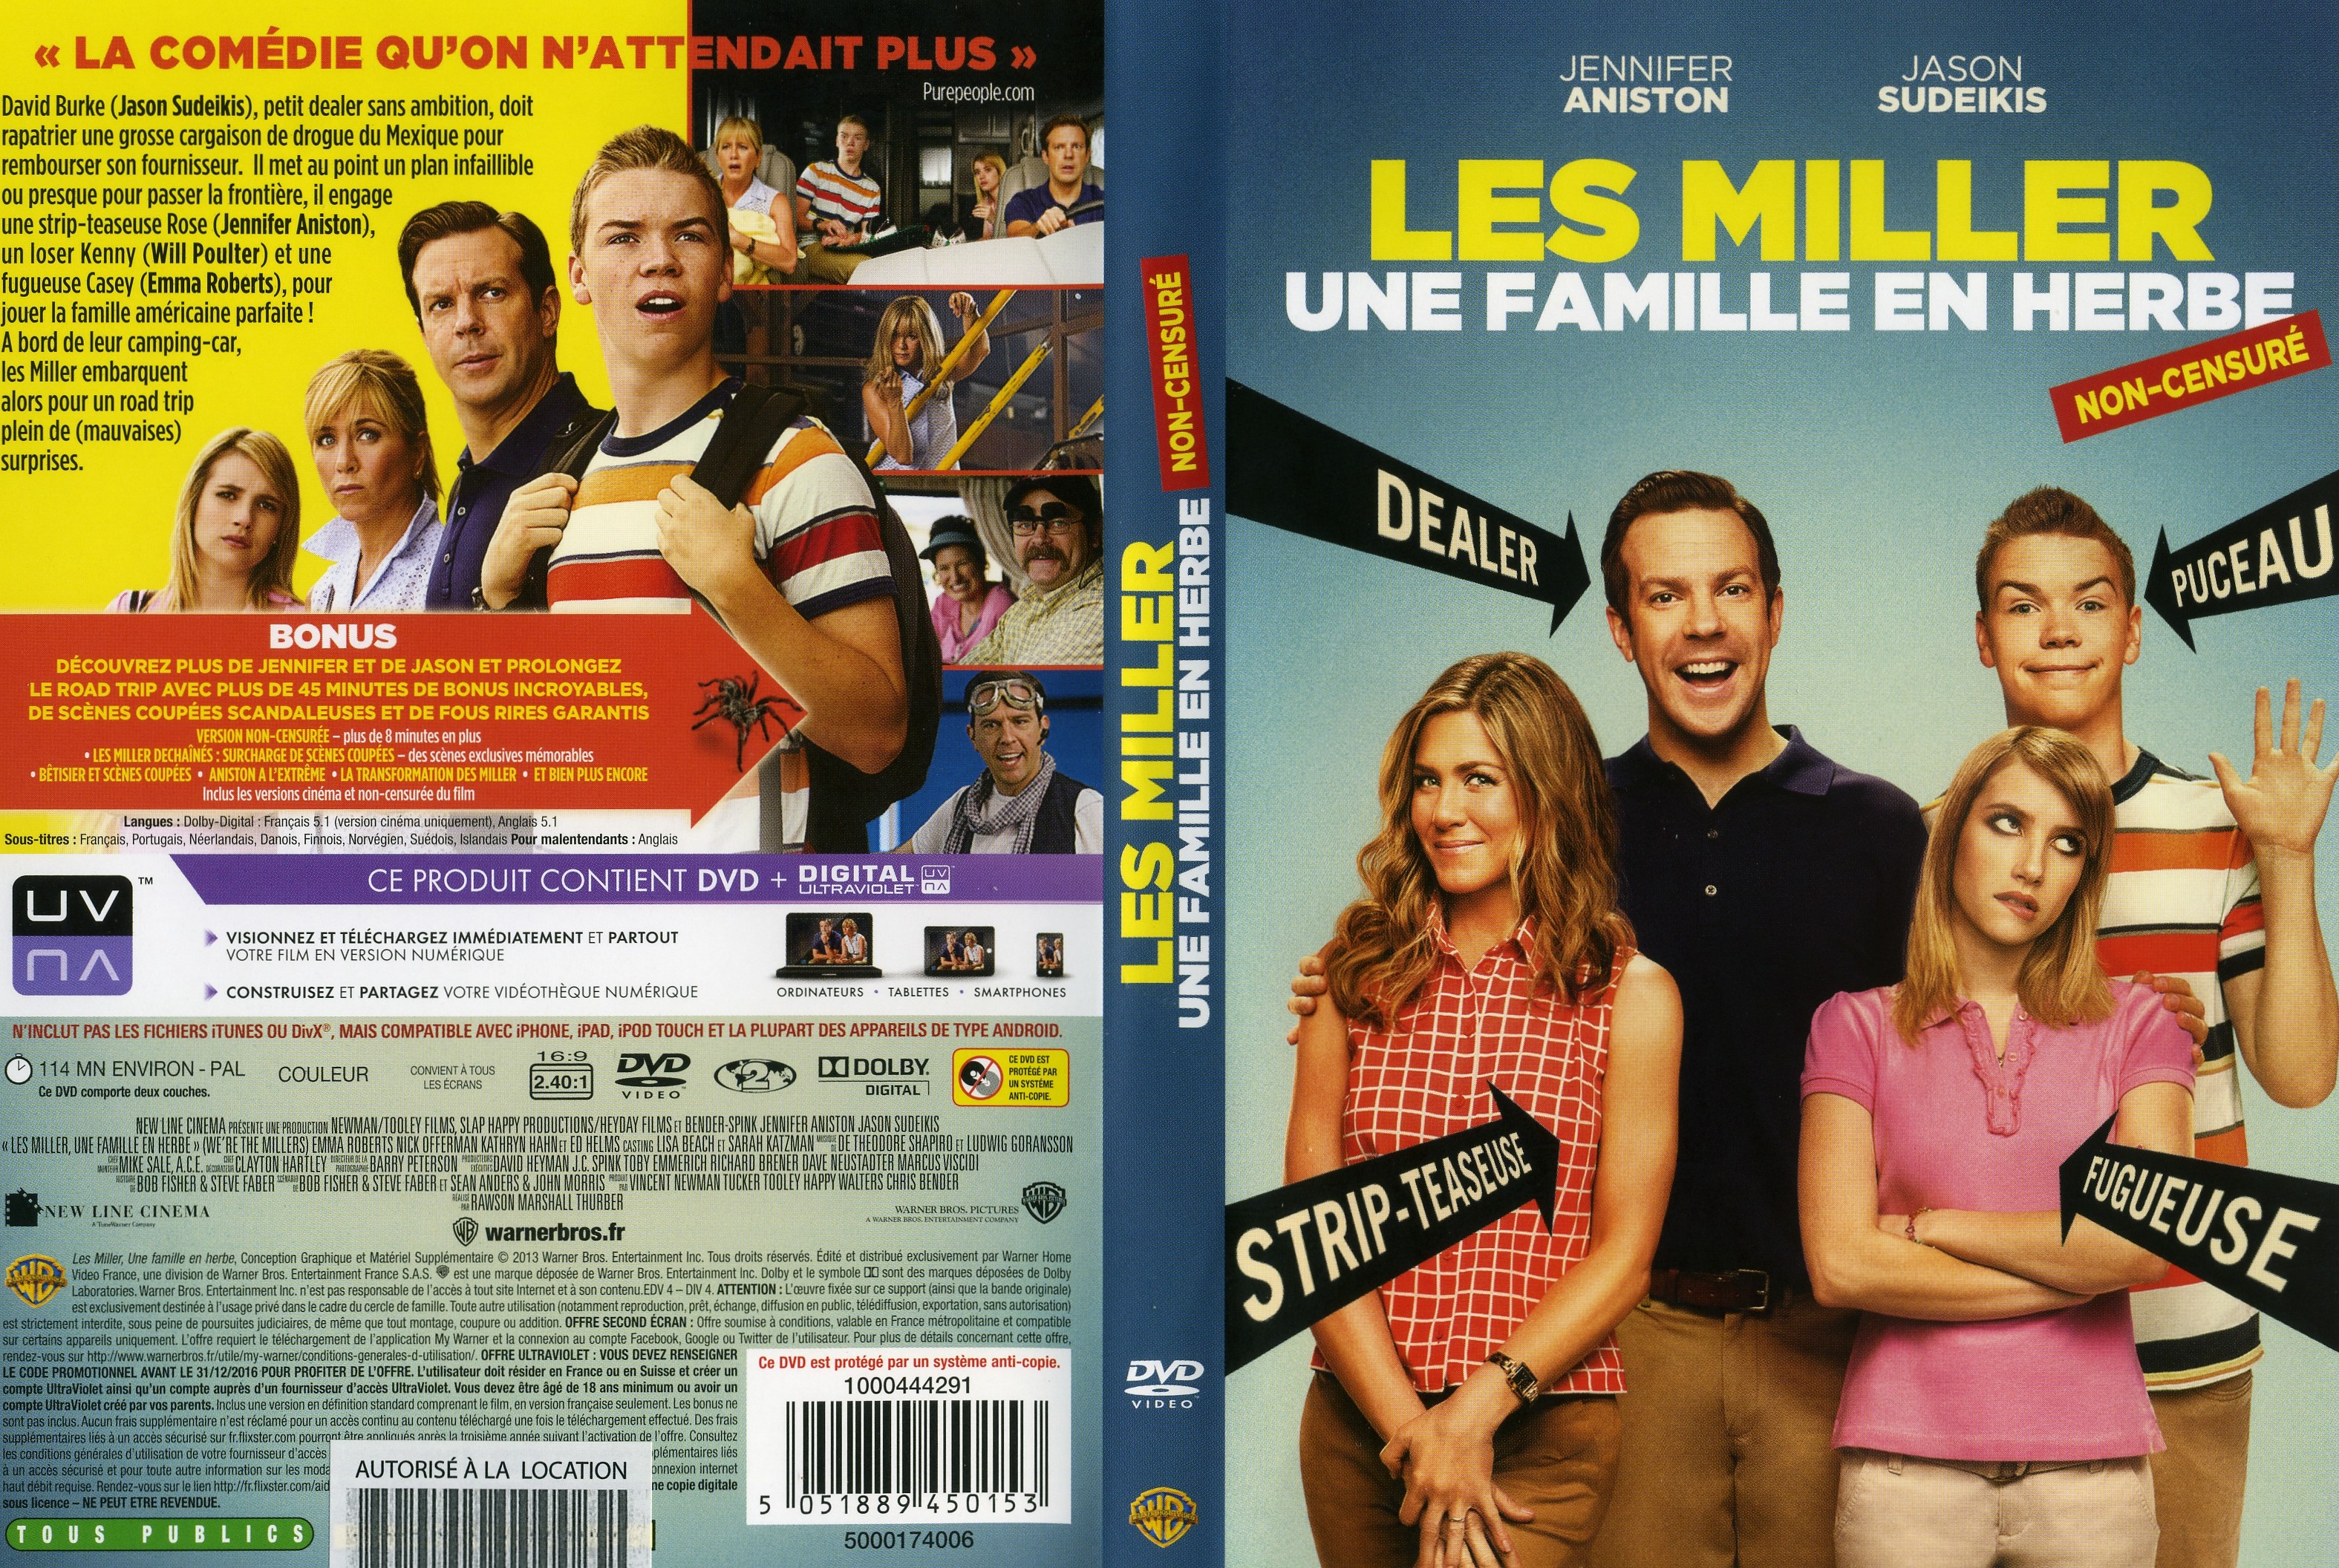 Jaquette DVD Les Miller, une famille en herbe